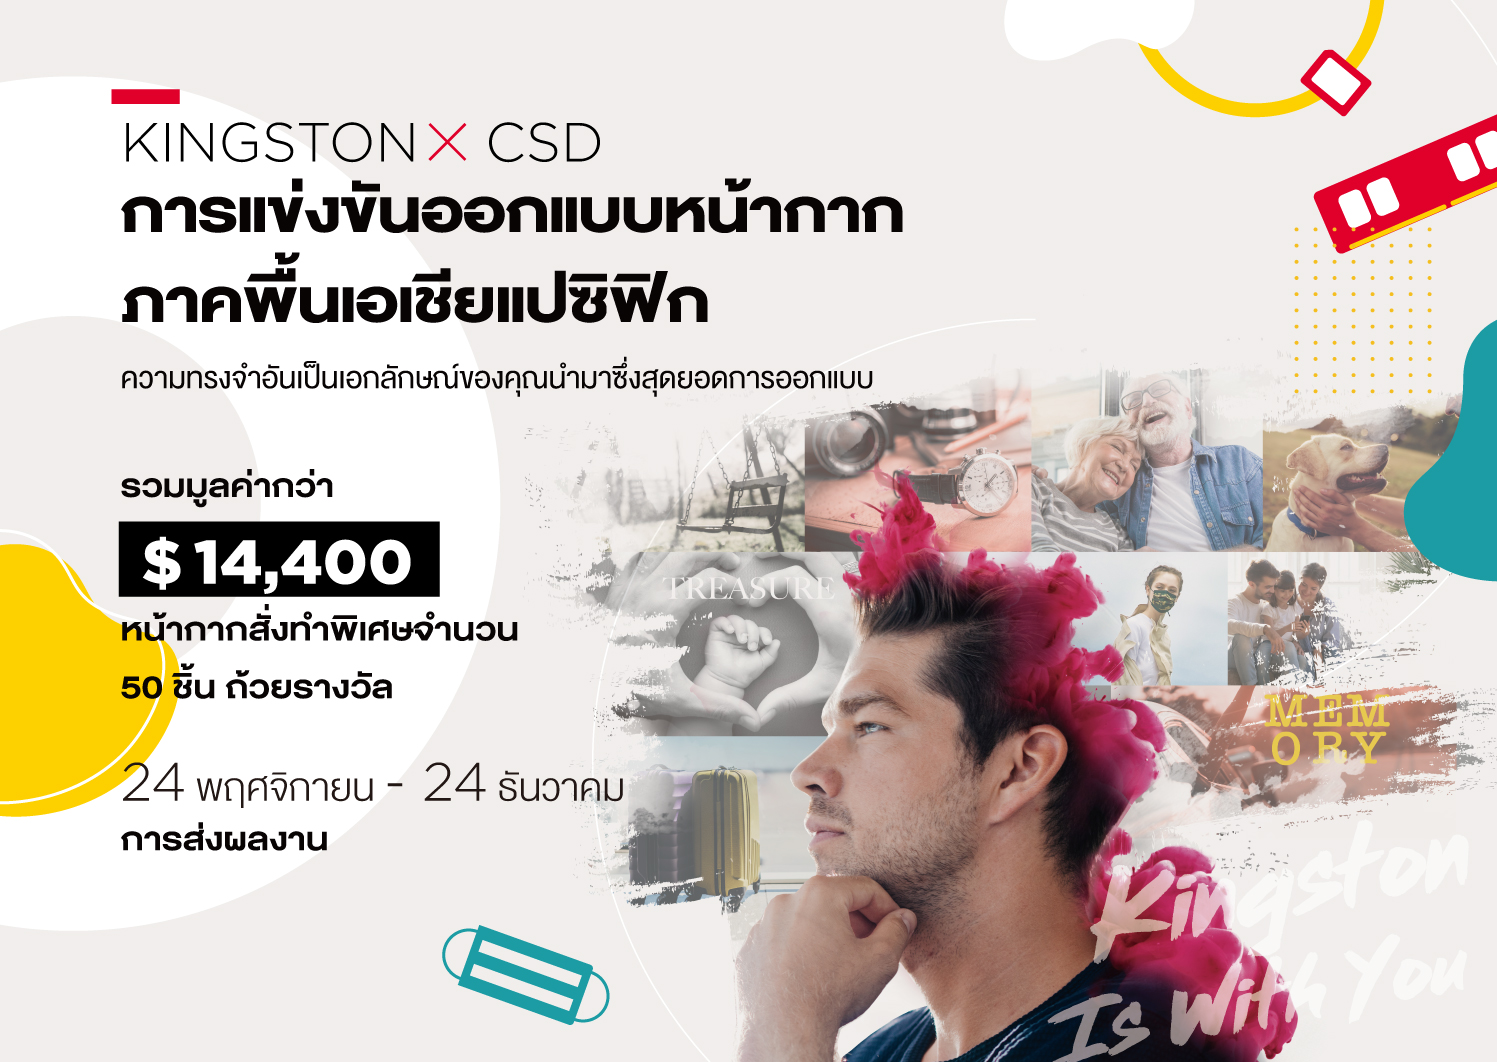 Kingston จับมือ CSD ร่วมปลดปล่อยพลังแห่งความทรงจำ จัดการแข่งขันออกแบบหน้ากาก ภาคพื้นเอเชียแปซิฟิก ชิงรางวัลรวมมูลค่ากว่า 400,000 บาท!